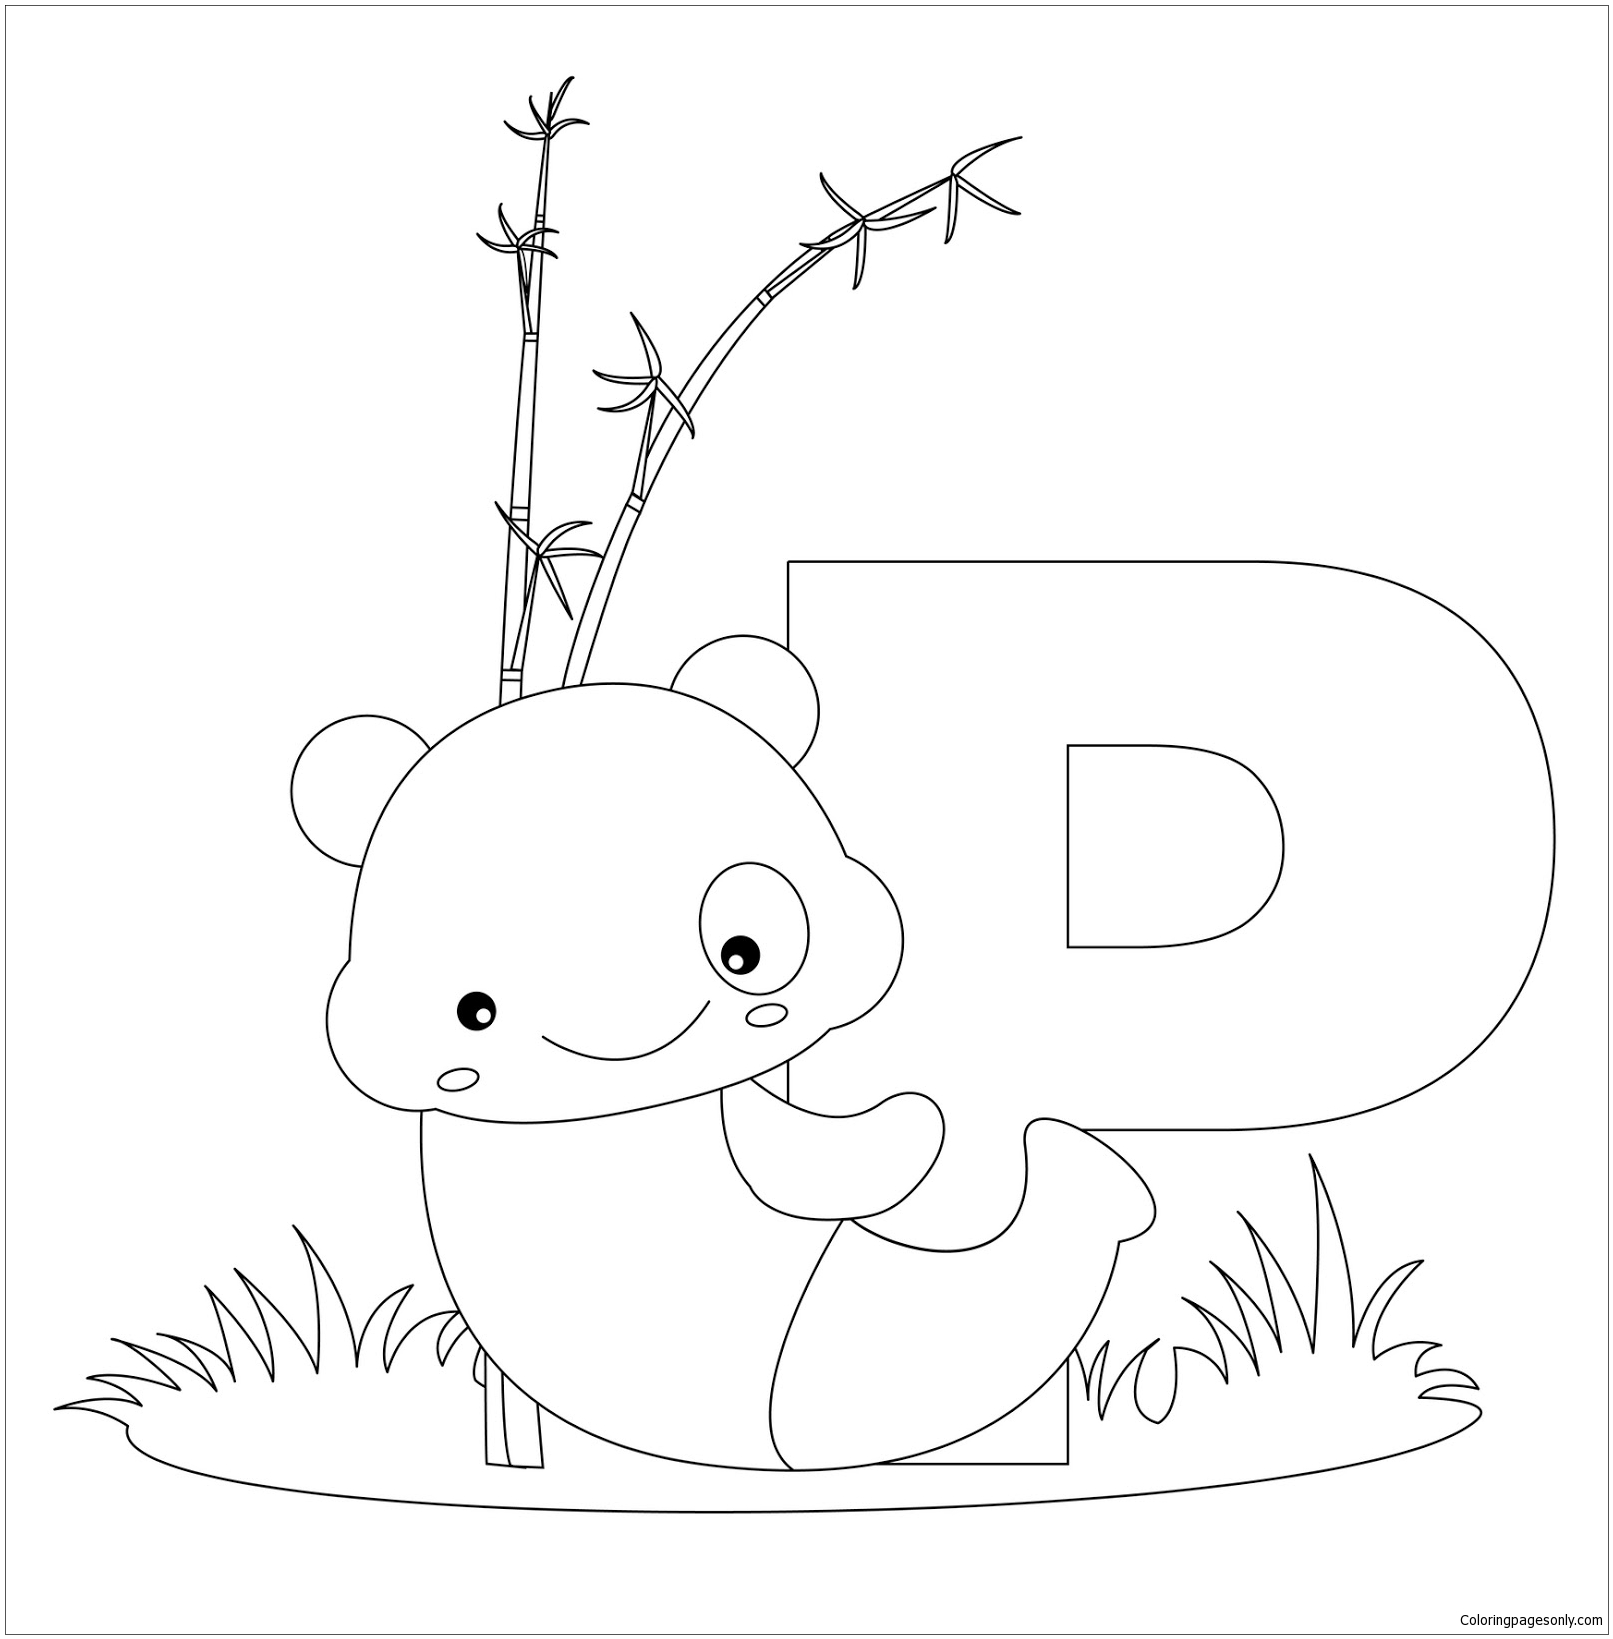 Буквы алфавита животных из буквы P